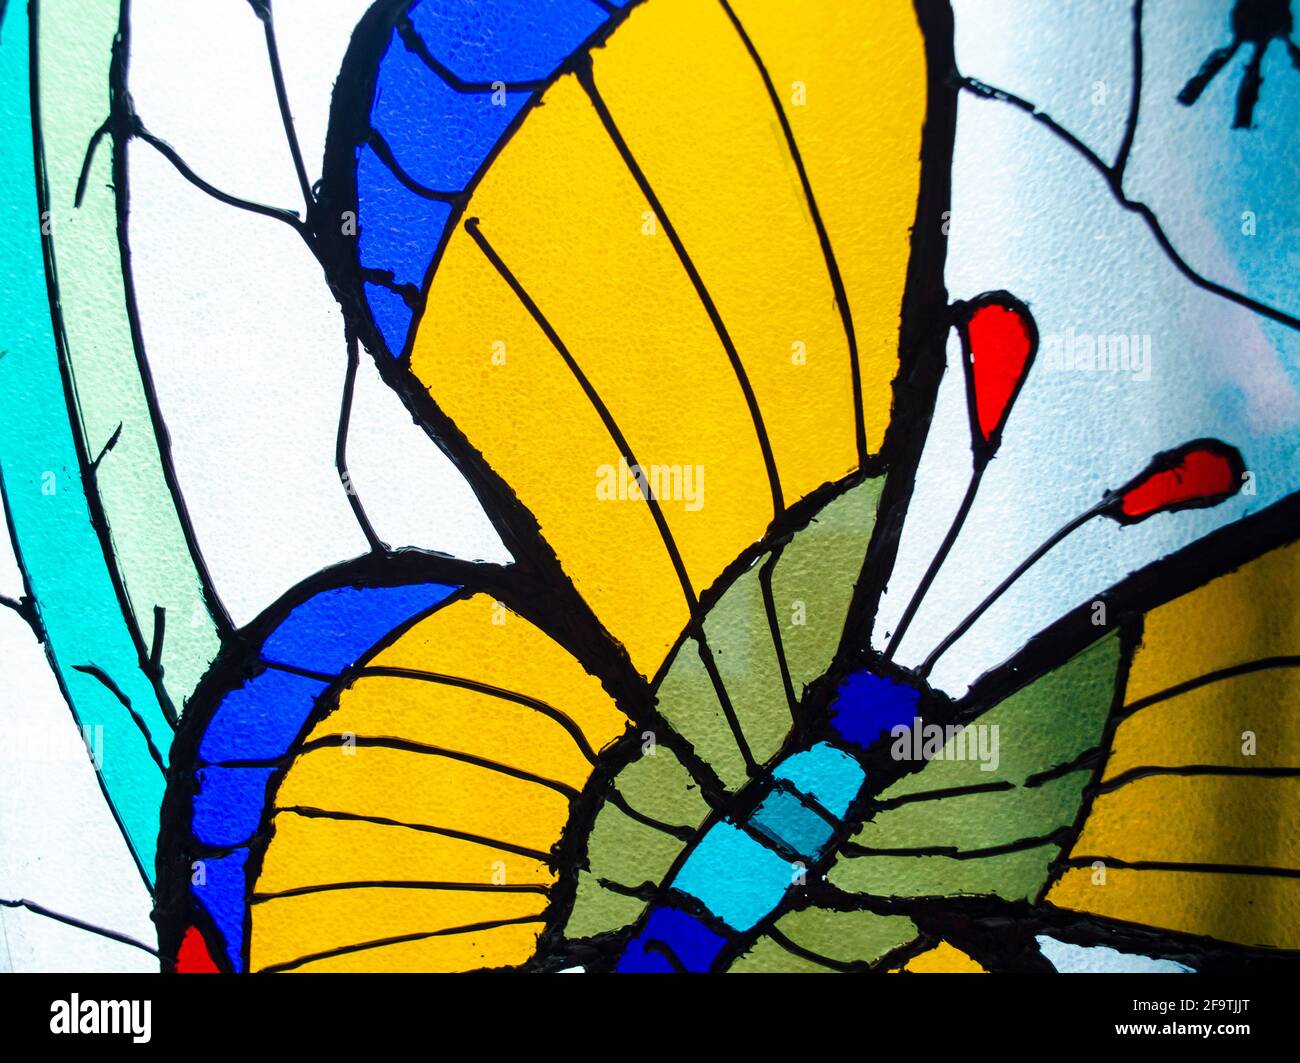 Vitraux. Détail papillon en vitreaux colorés Banque D'Images